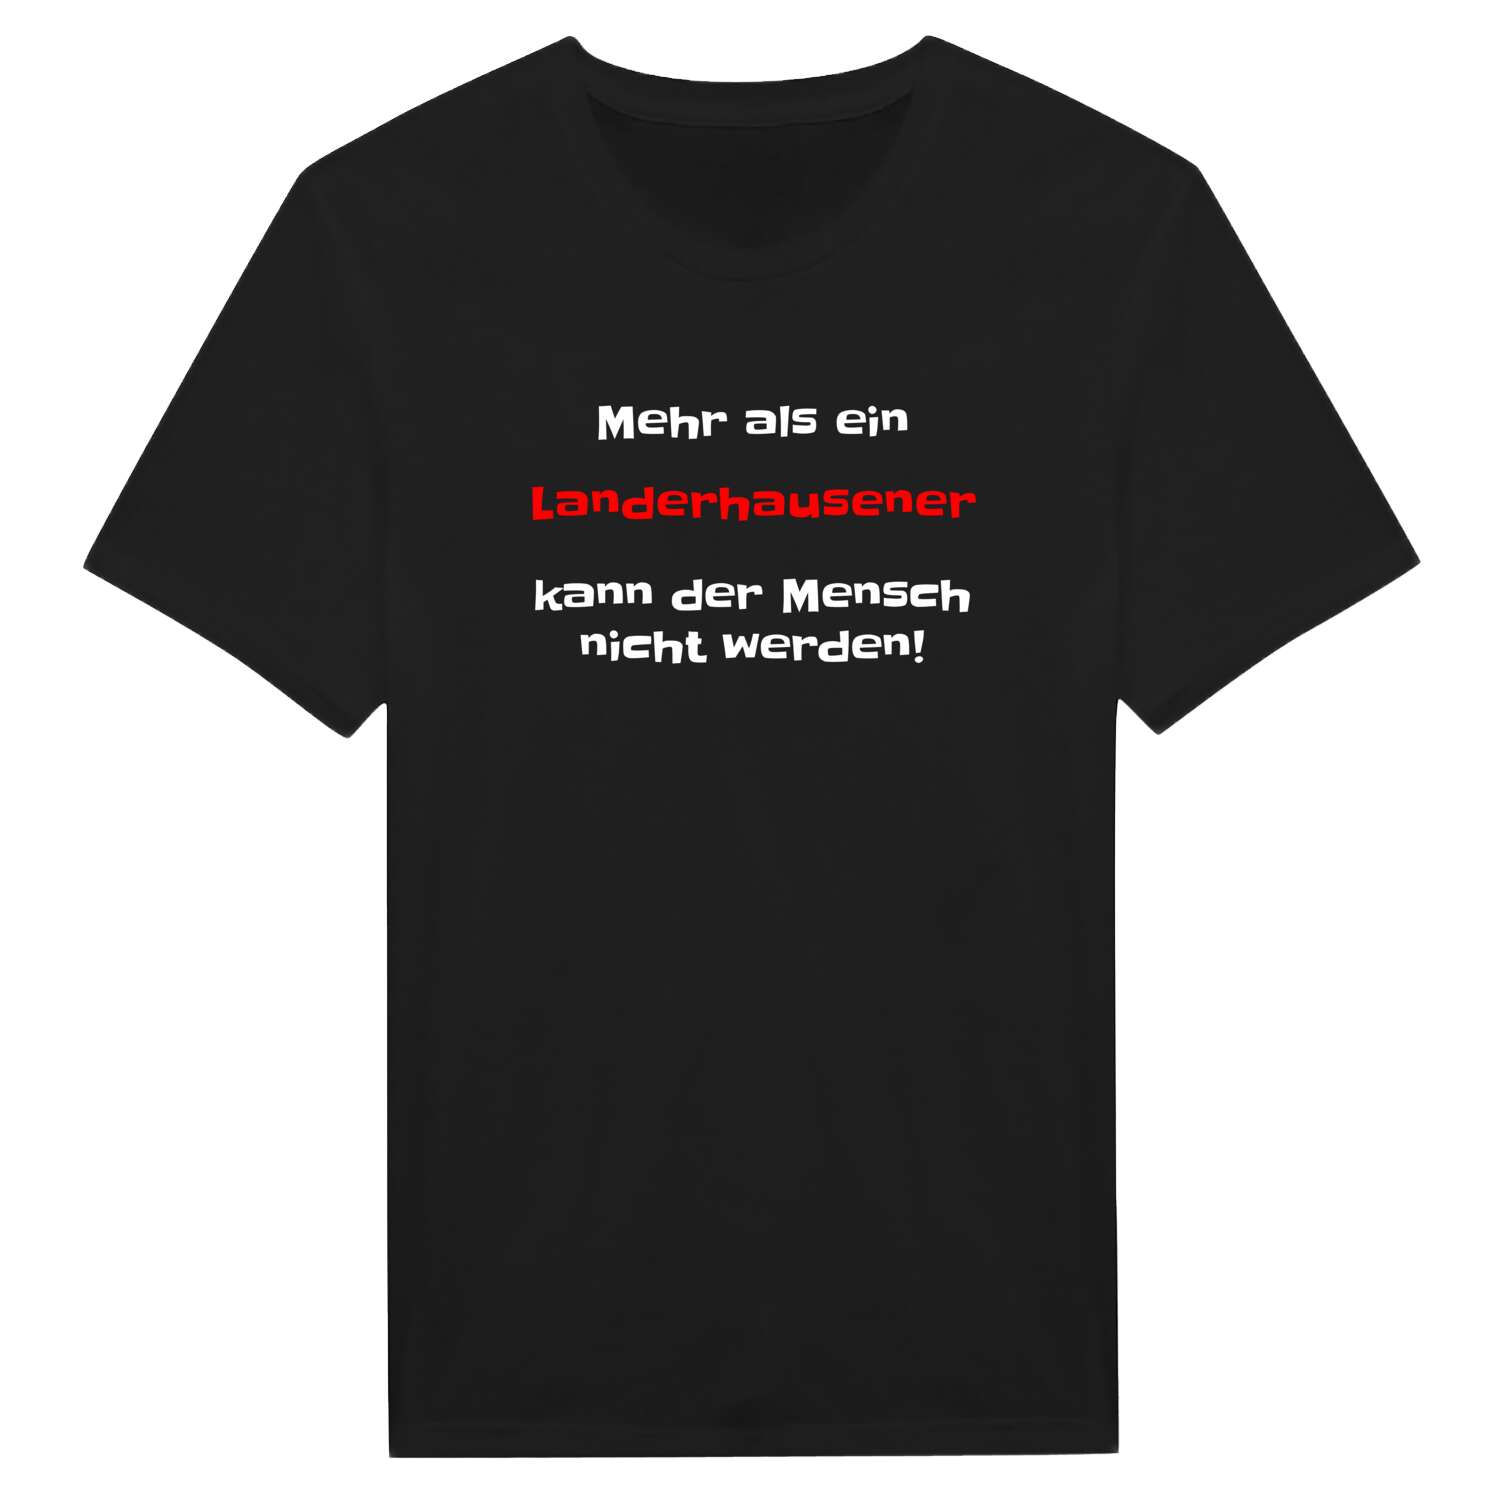 Landerhausen T-Shirt »Mehr als ein«